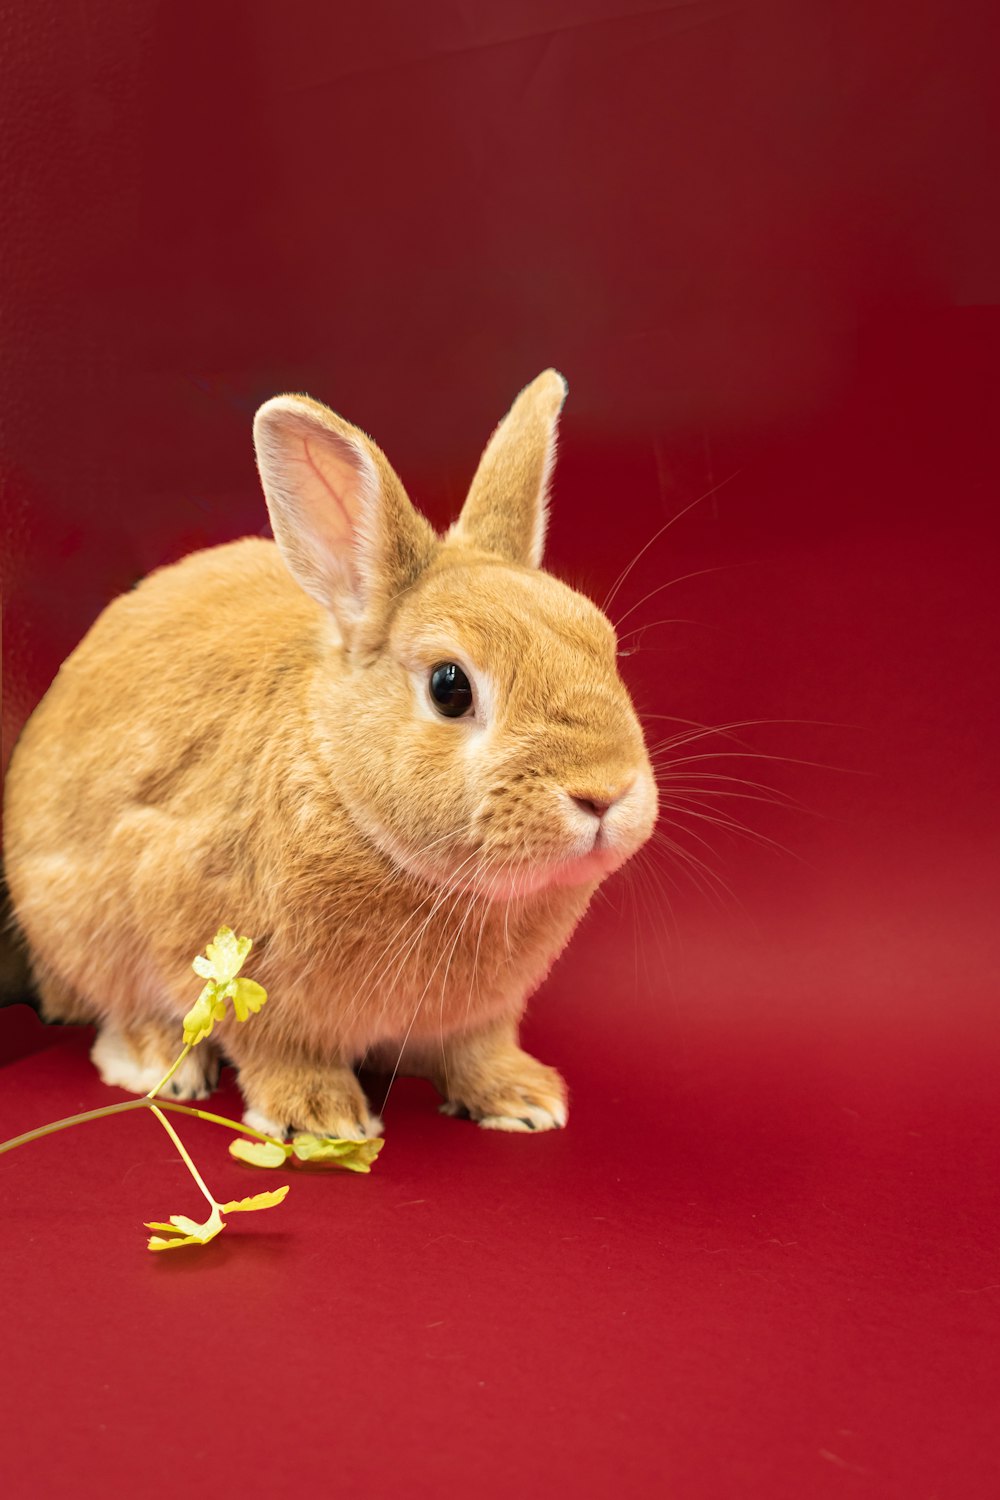 Ein kleines Kaninchen sitzt auf einem roten Boden